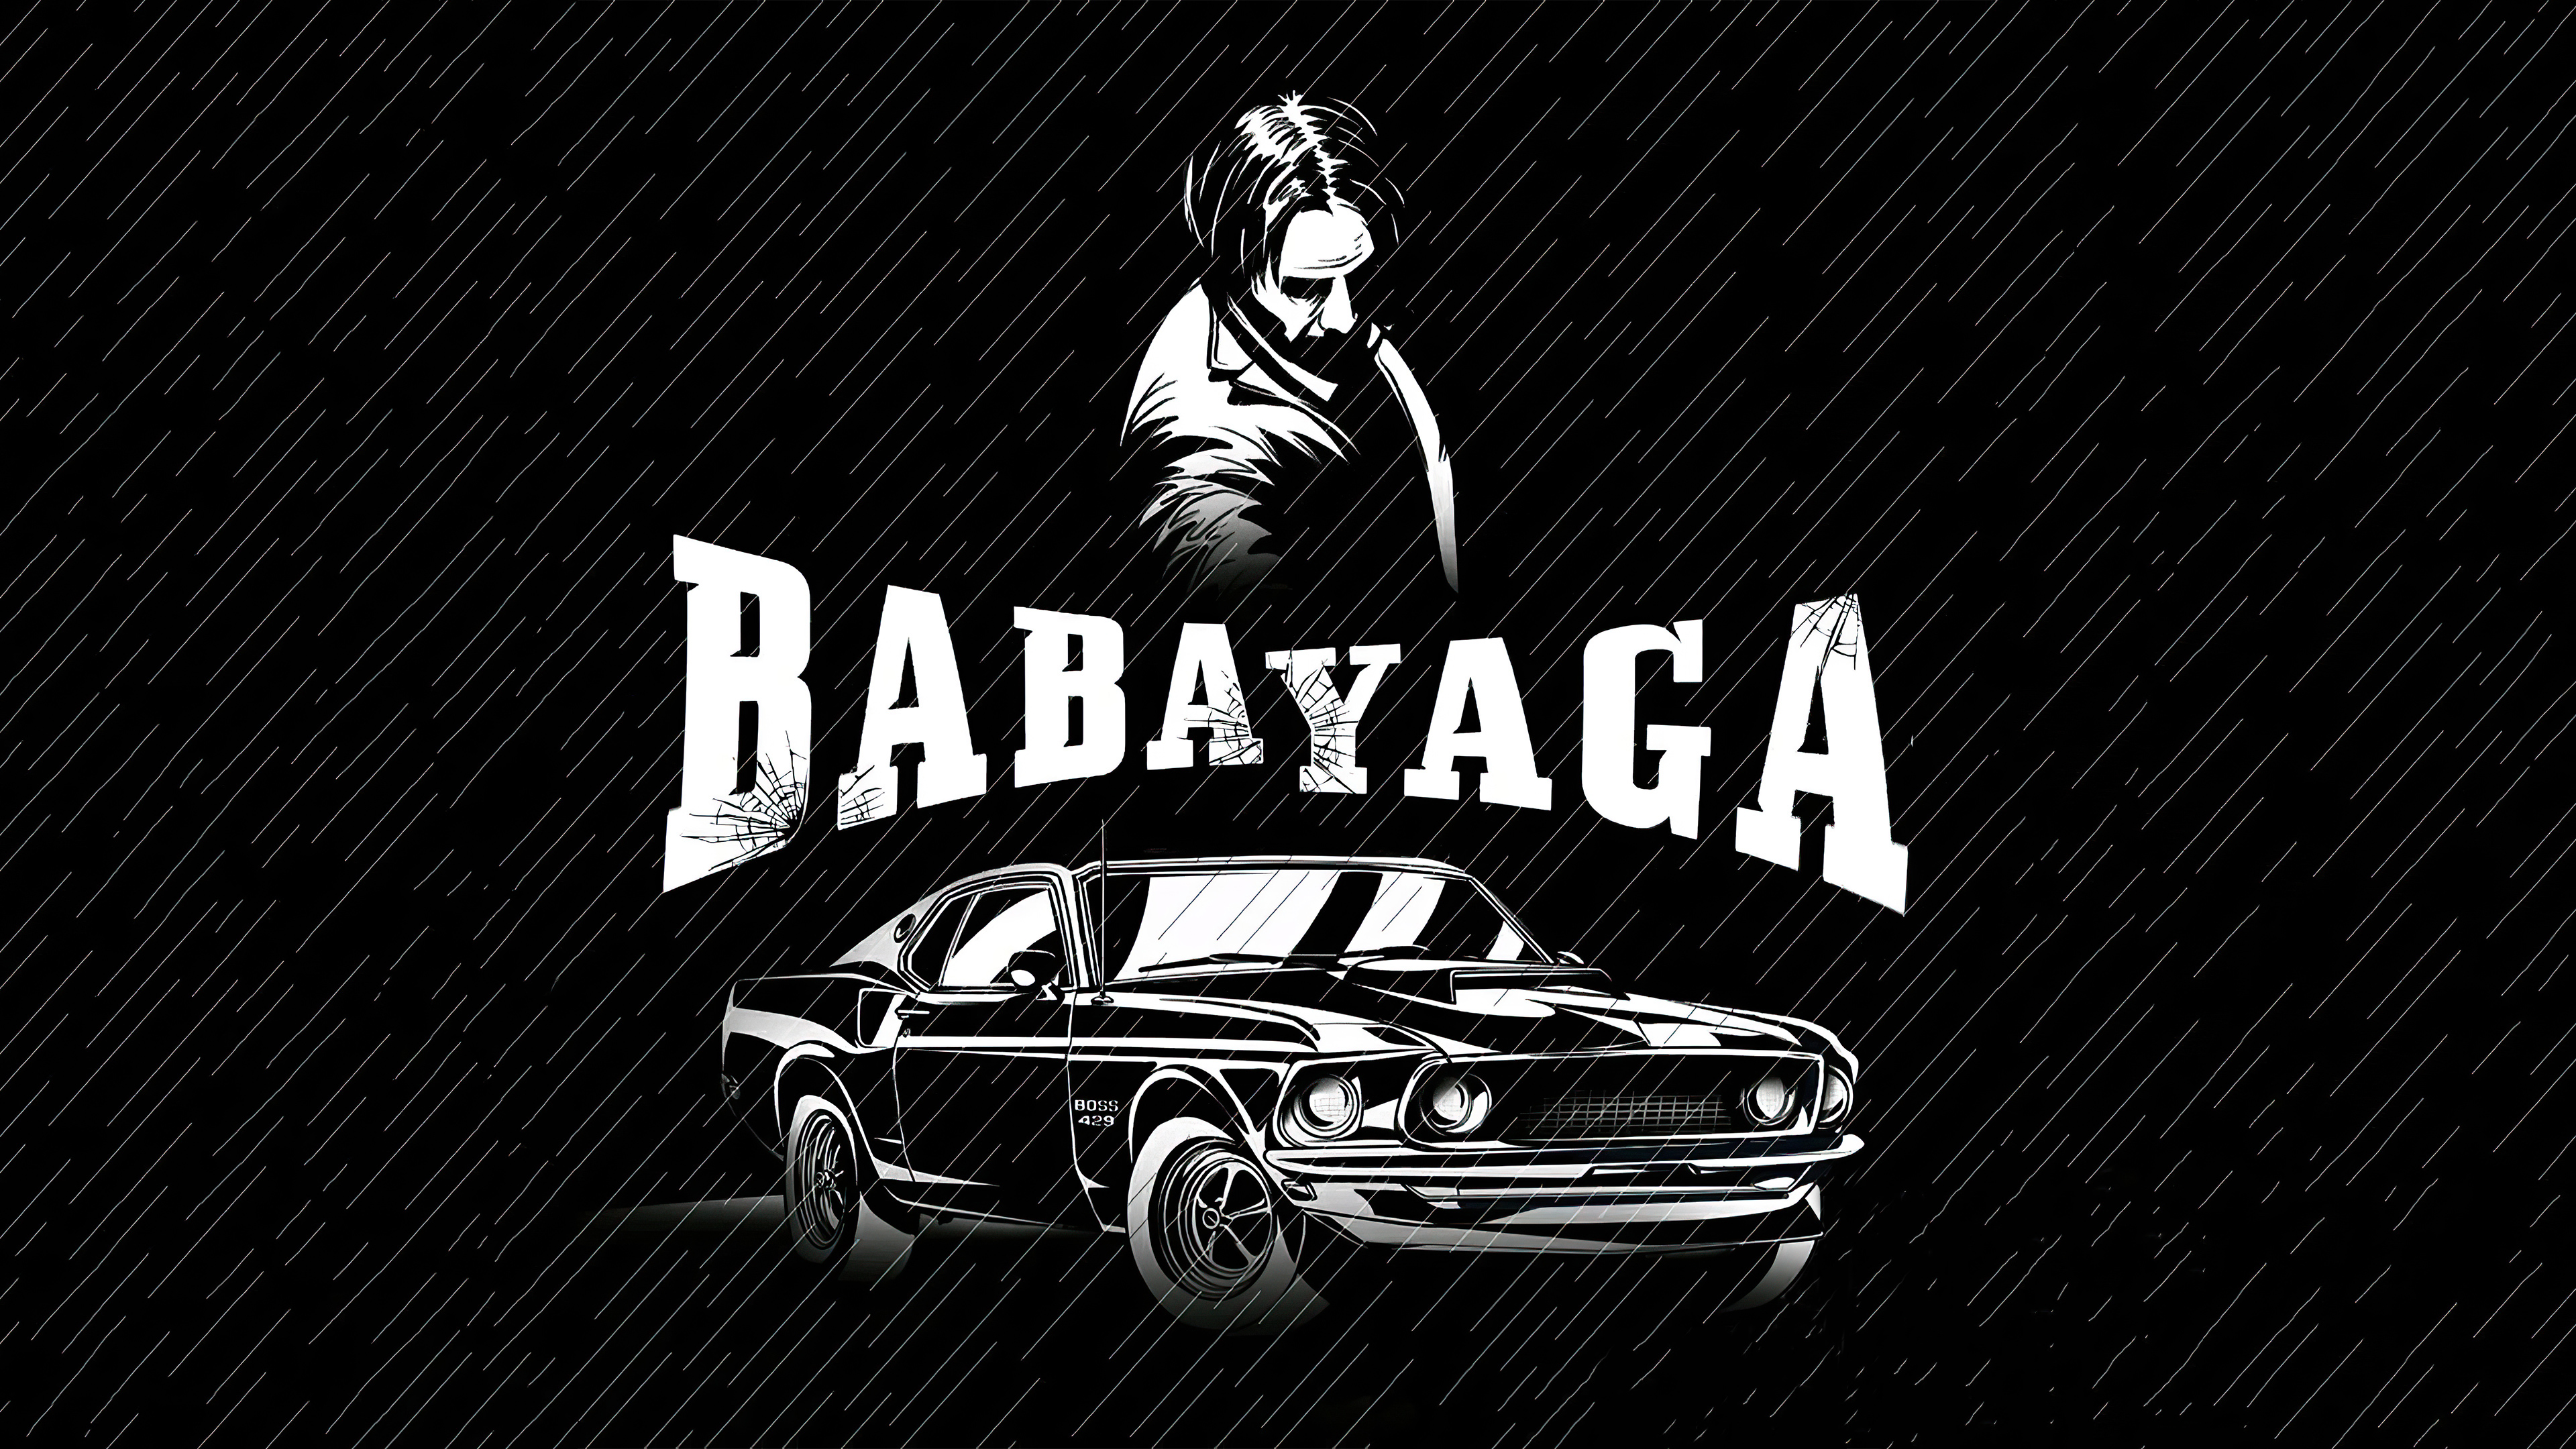 Baba Yaga Wallpapers  Top Free Baba Yaga Backgrounds  WallpaperAccess